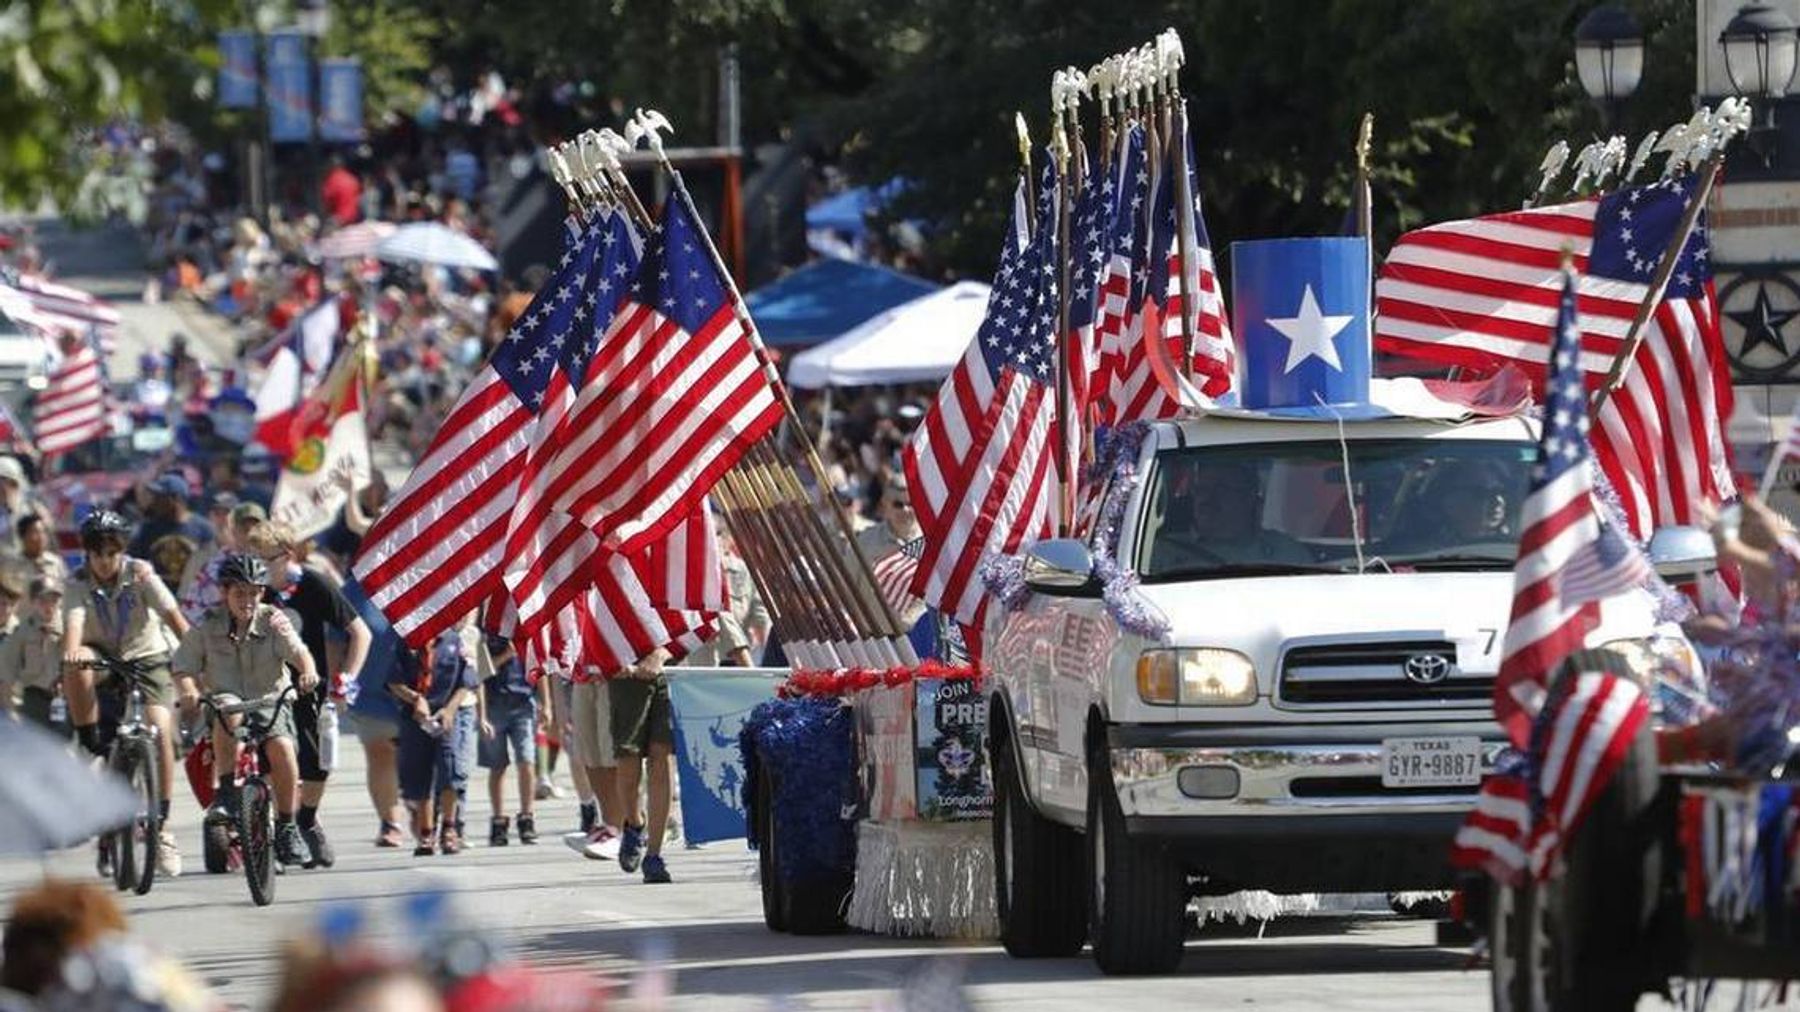 Arlington Independence Day Parade Downtown Arlington, TX